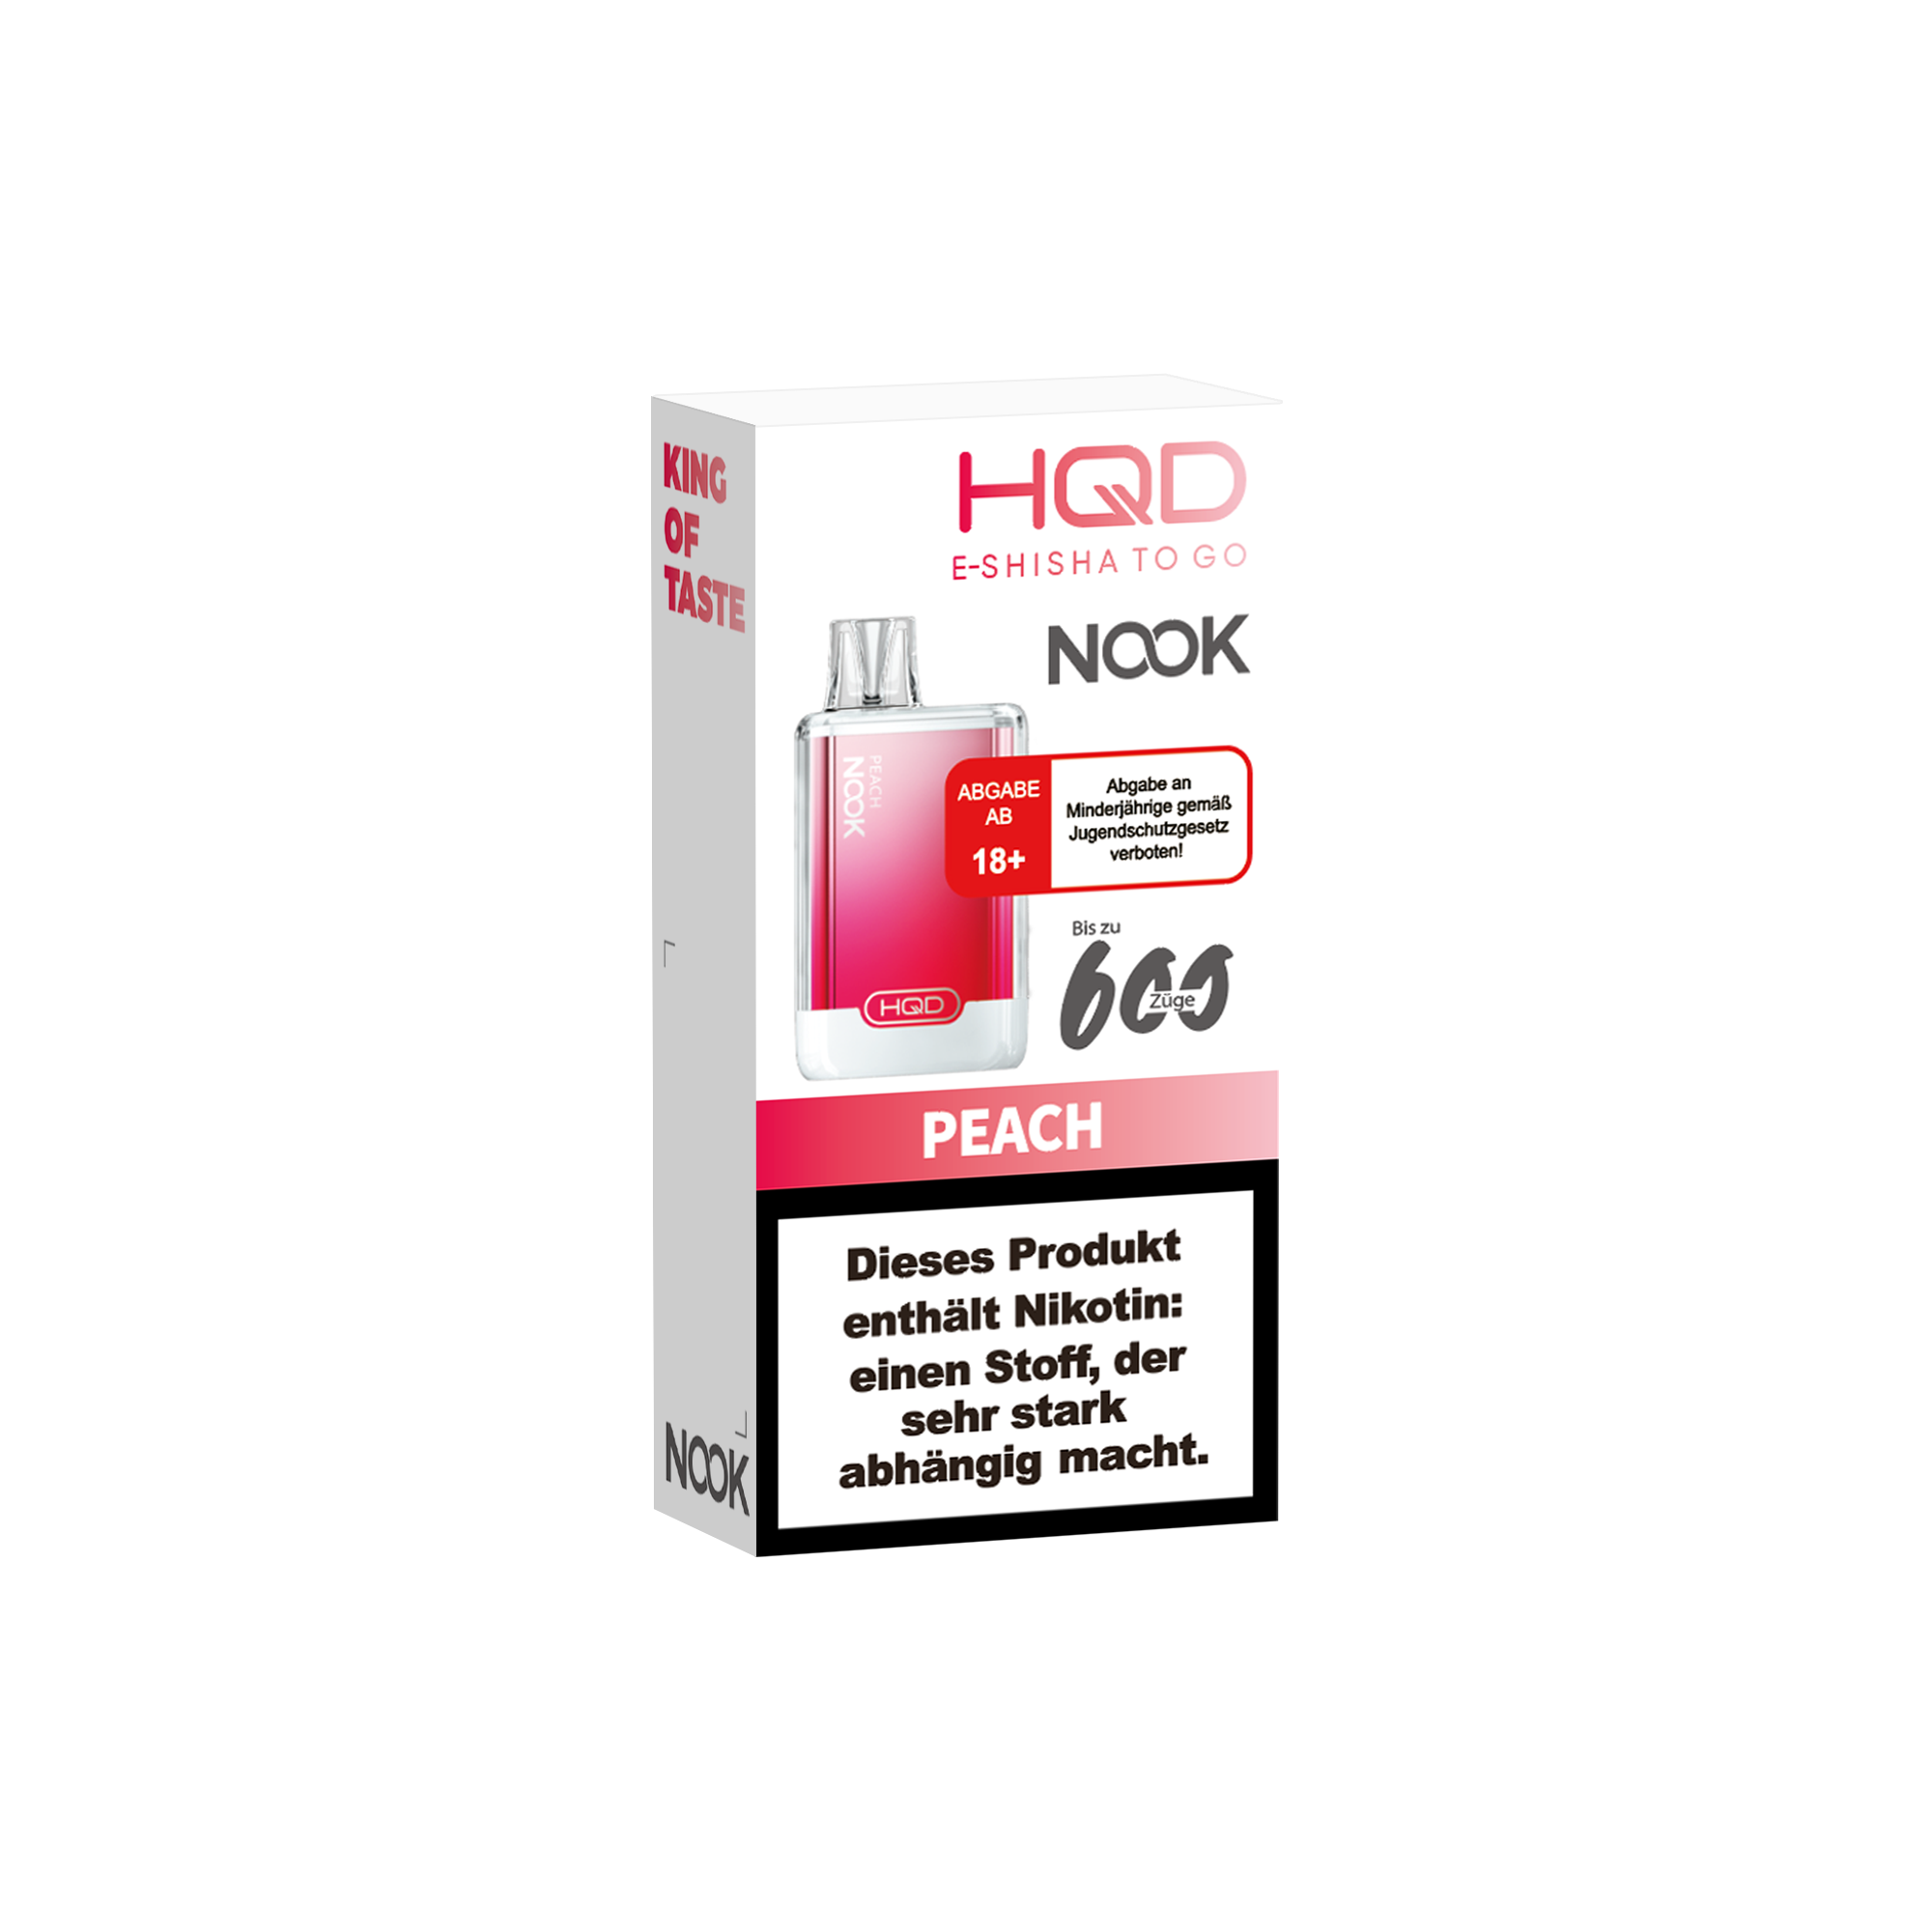 E-Zigarette HQD Nook PEACH 18mg Nikotin 600